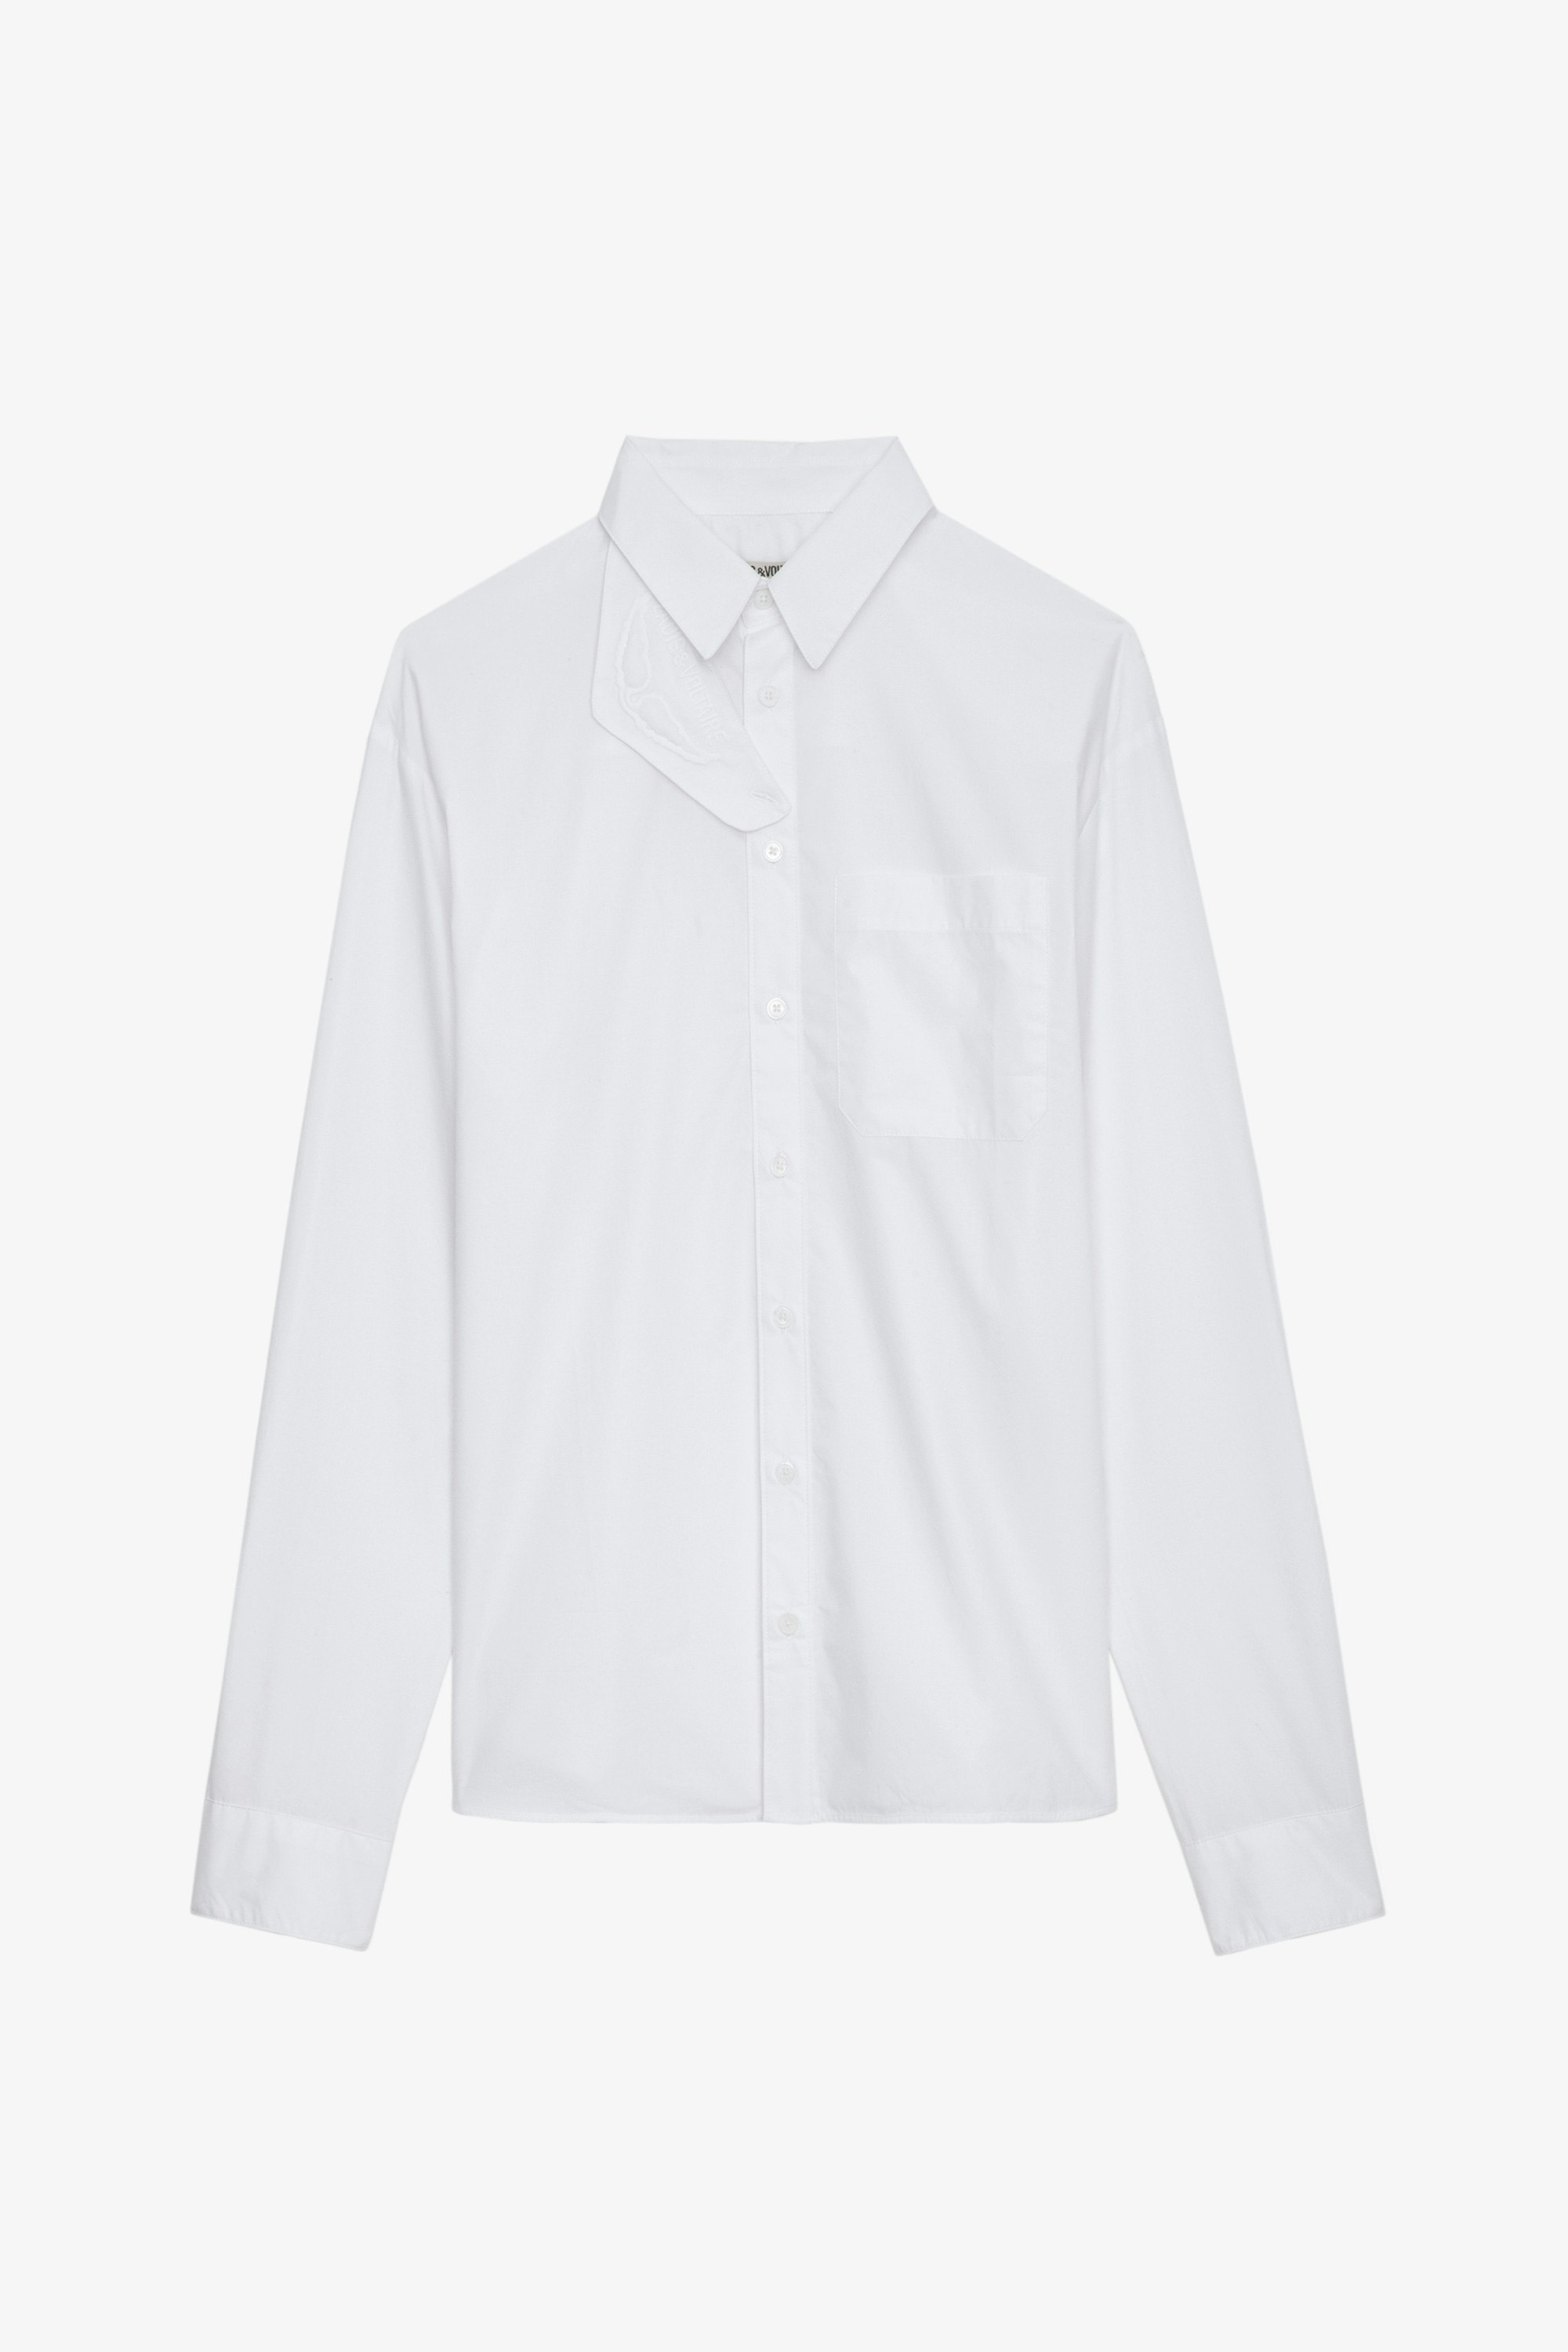 Camisa Tyrone - Camisa blanca larga de algodón con botones, bolsillos y cuello con protección desmontable.